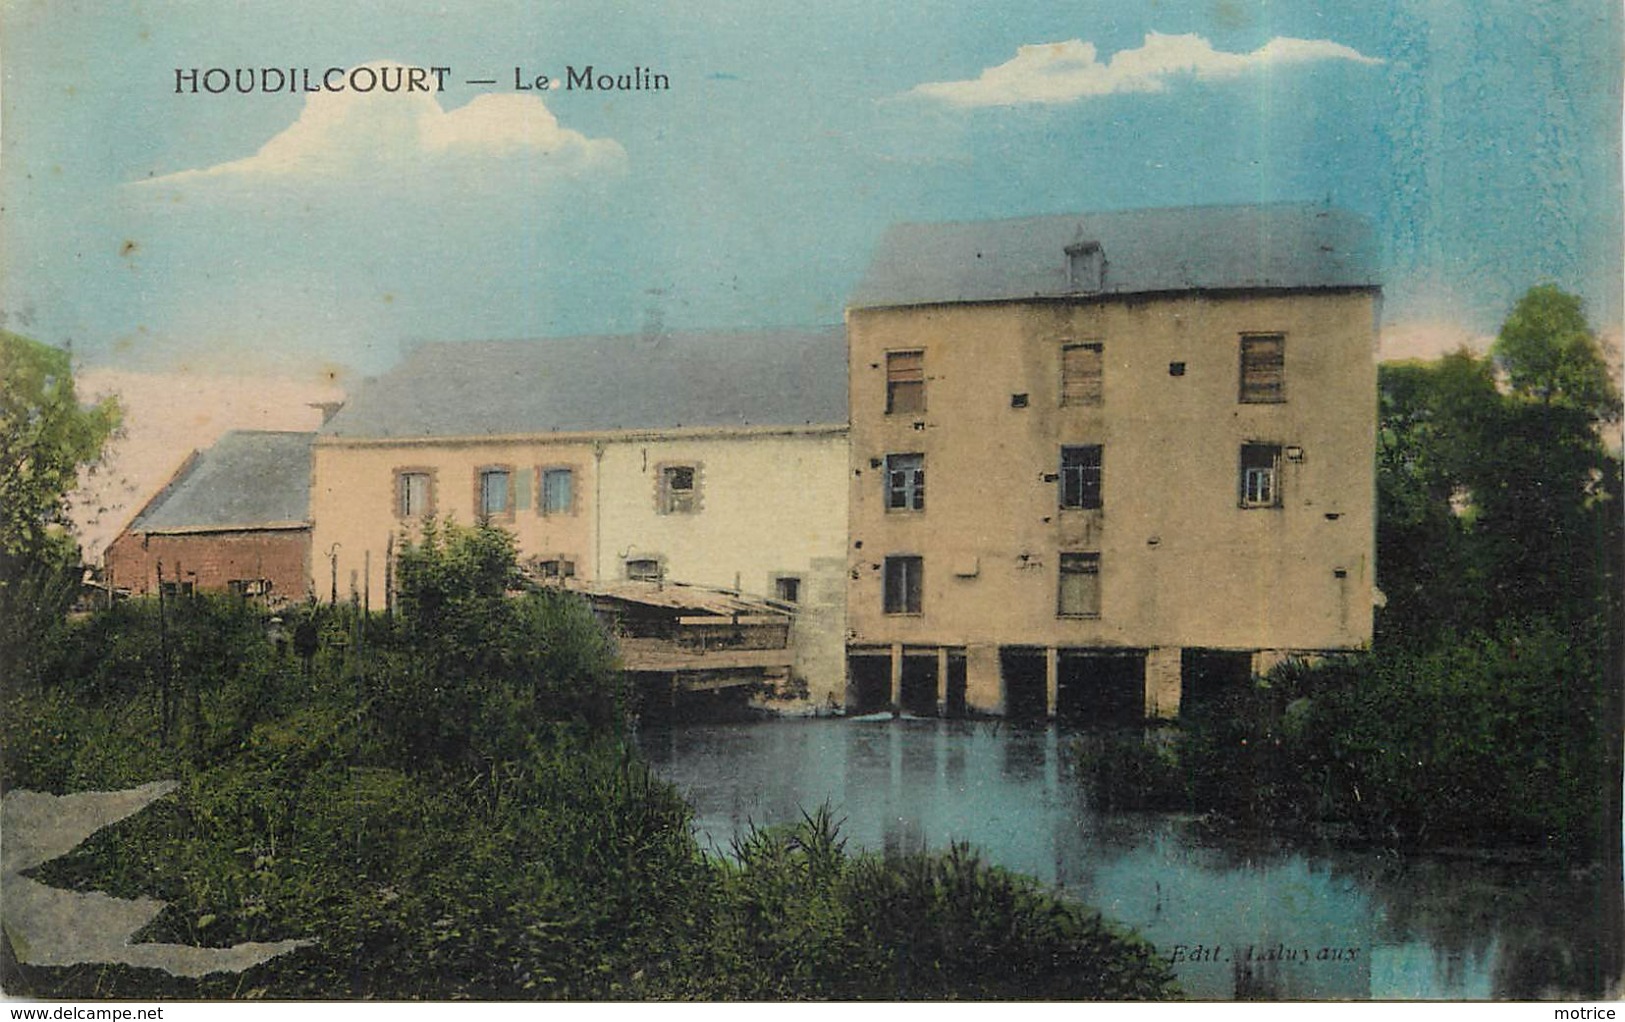 HOUDILCOURT - Le Moulin. - Moulins à Eau